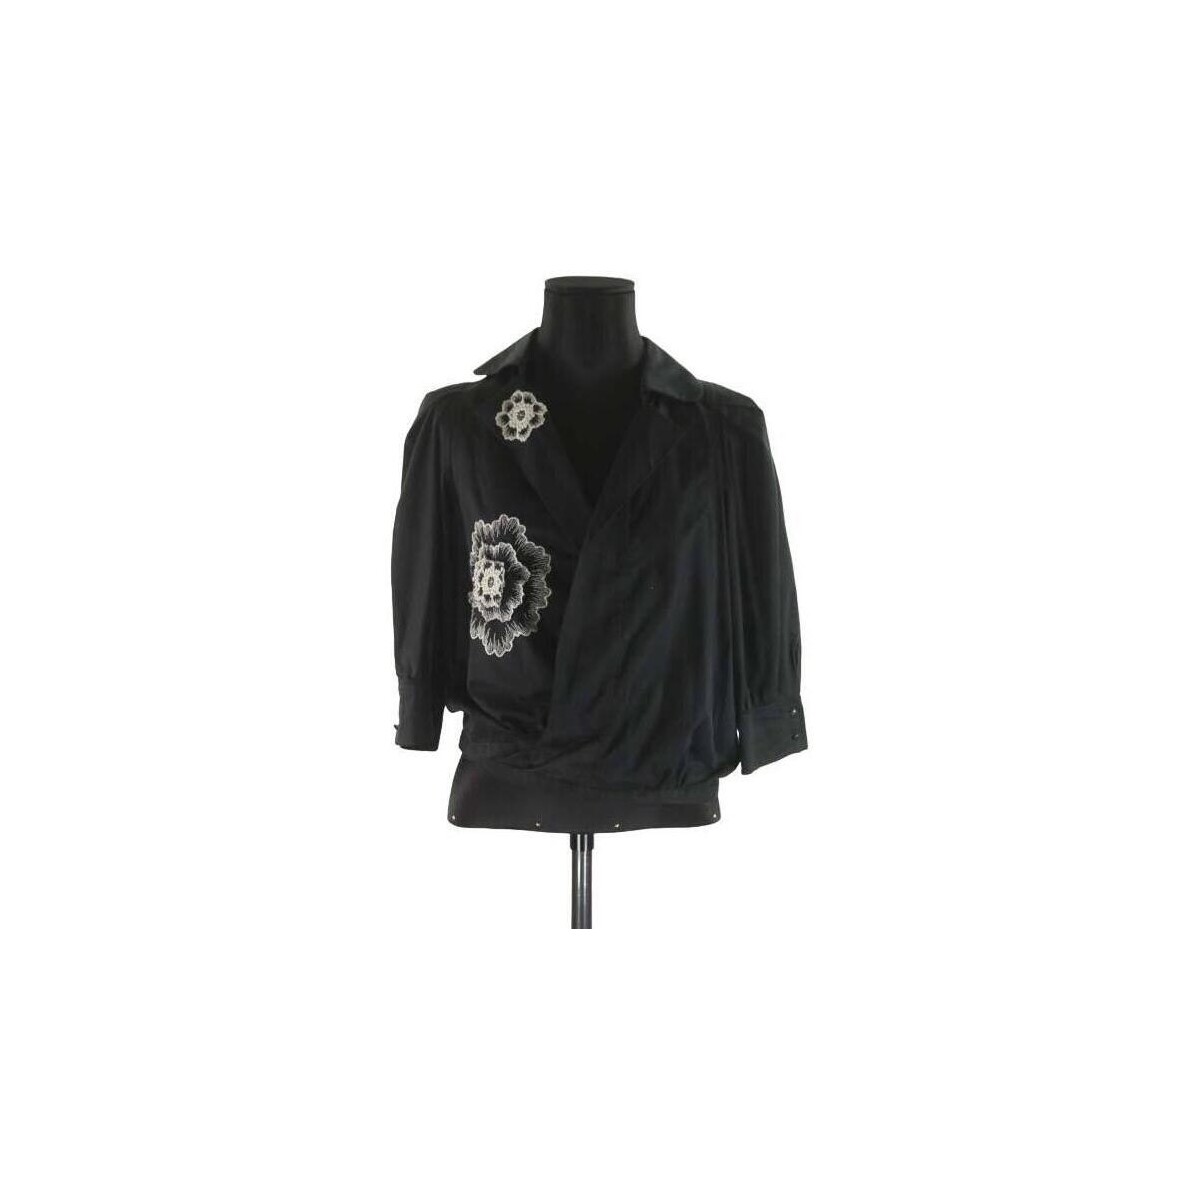 Vêtements Femme check-print belted shirt dress Blouse en coton Noir